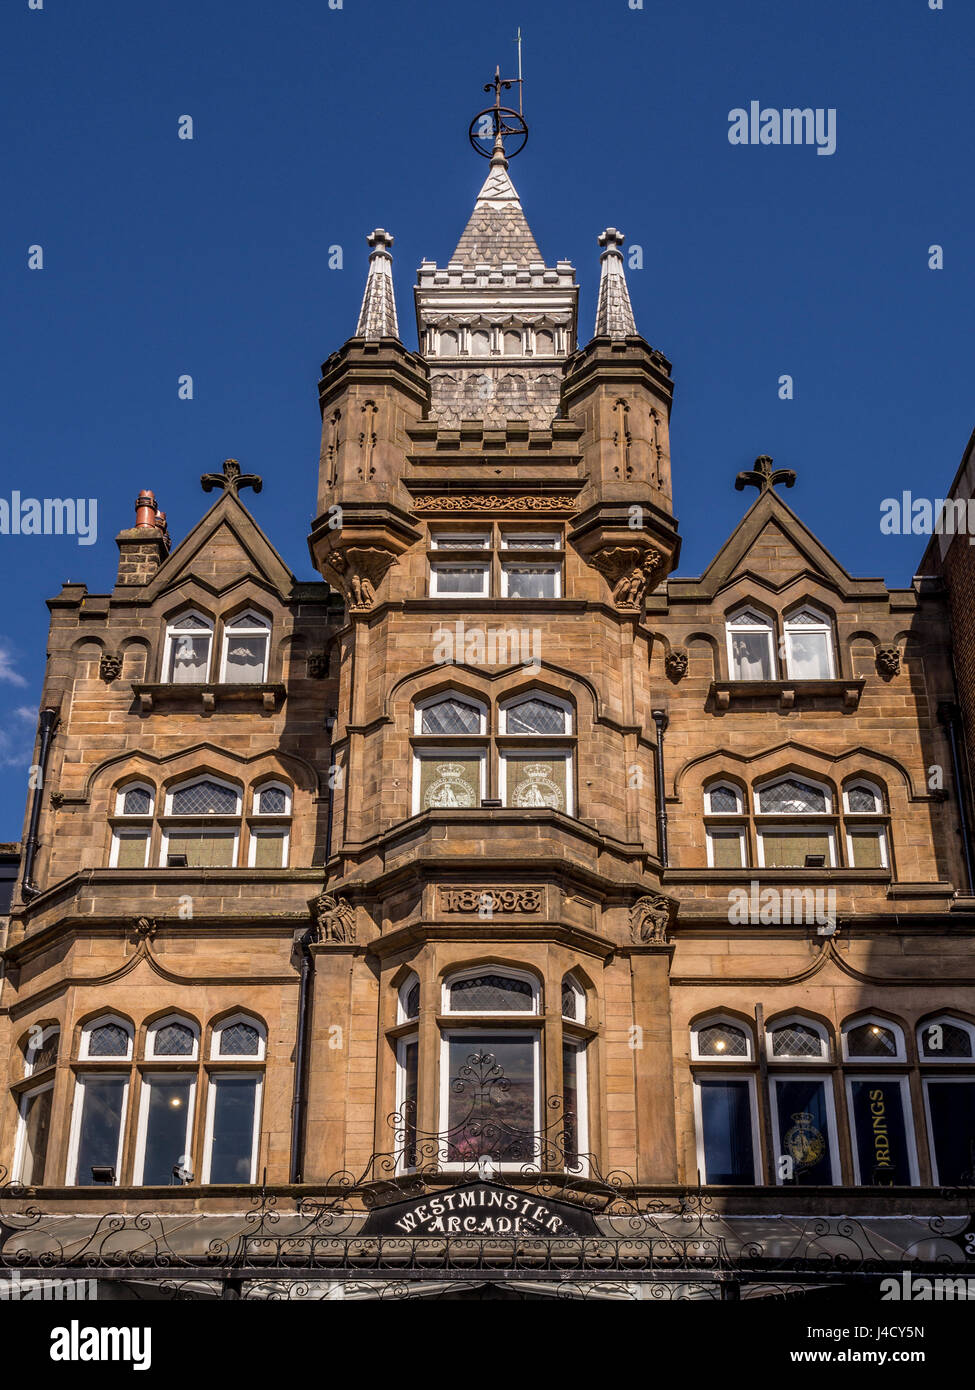 El exterior del edificio victoriano Arcade de Westminster, Parliament Street, Harrogate, Reino Unido. Foto de stock